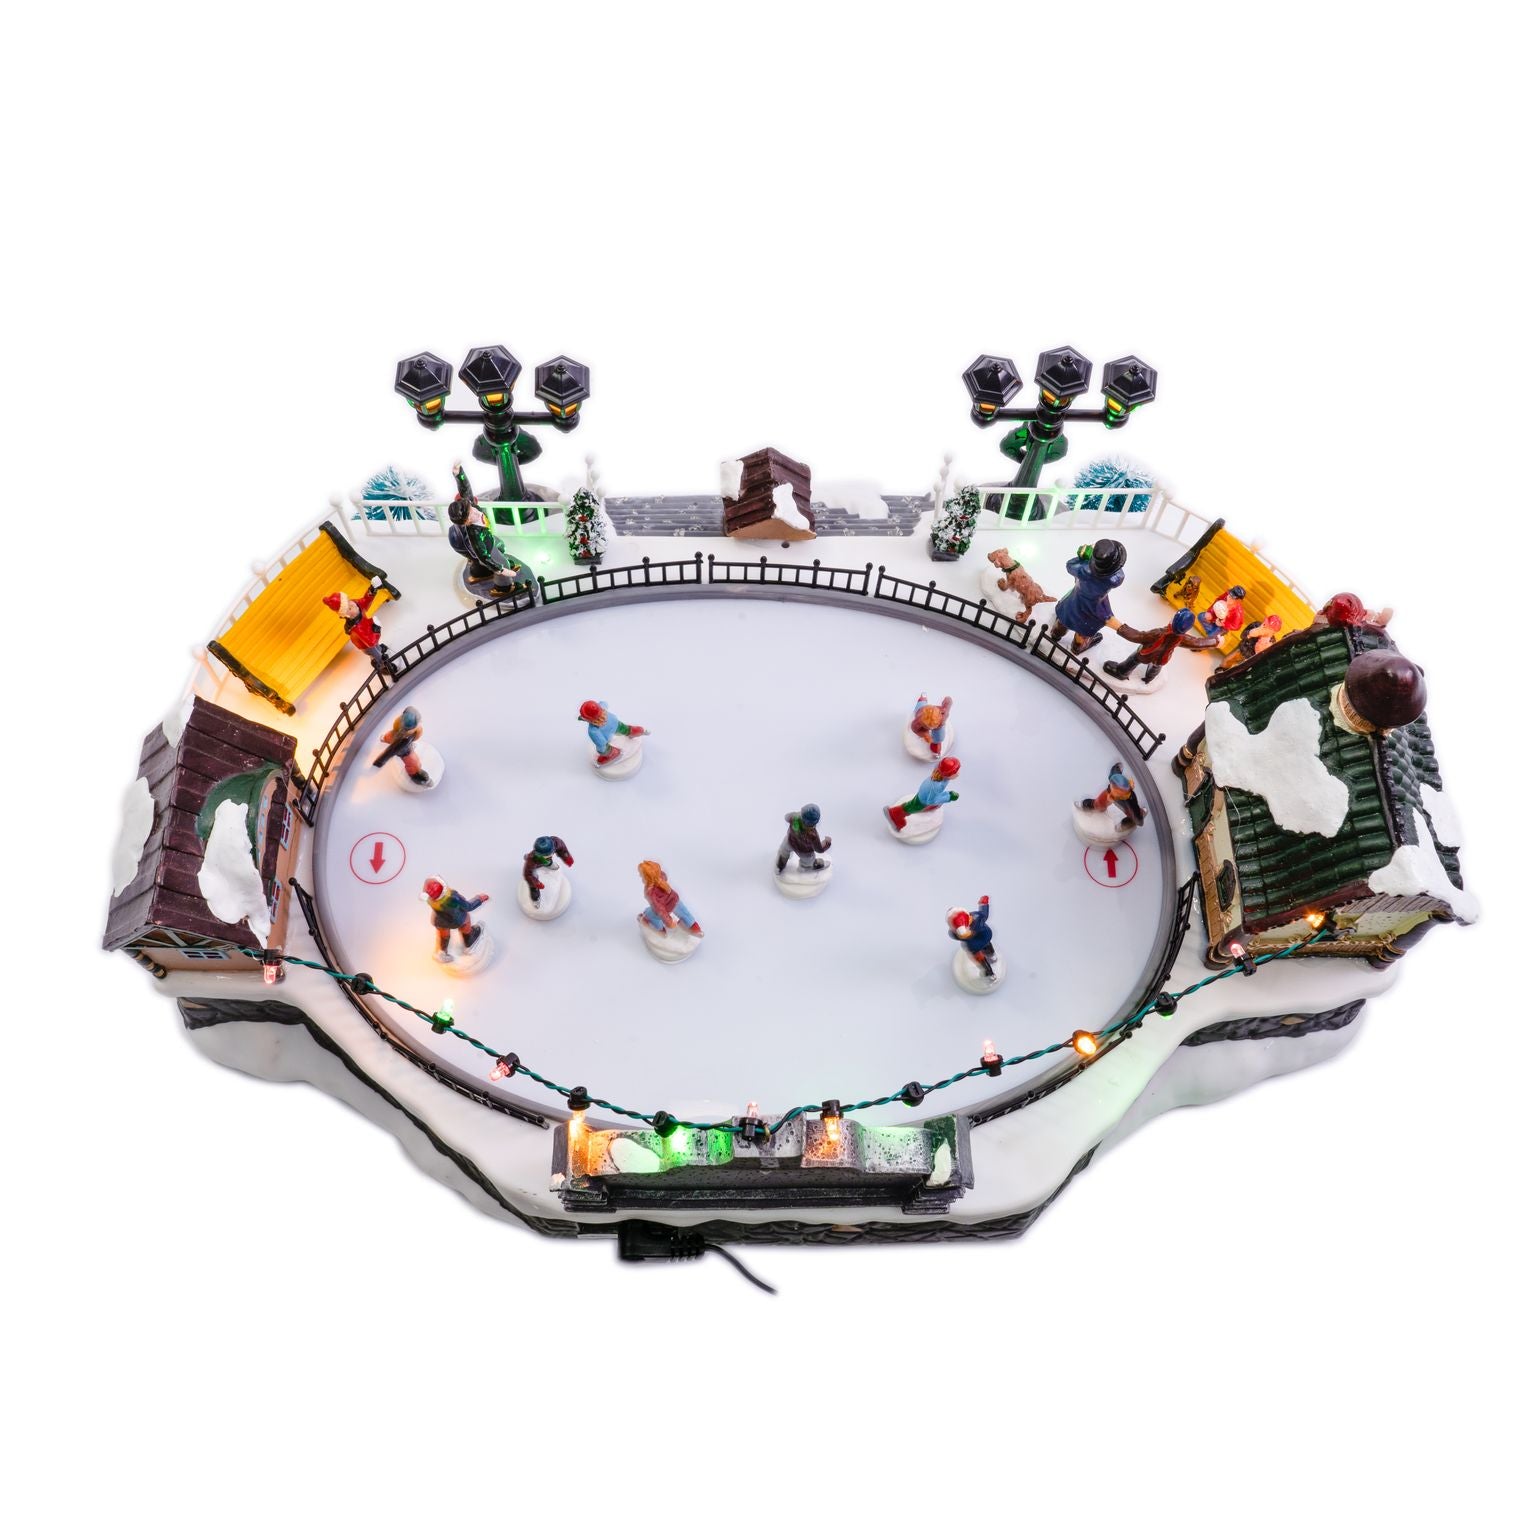 Animated LED Ice Skating Rink